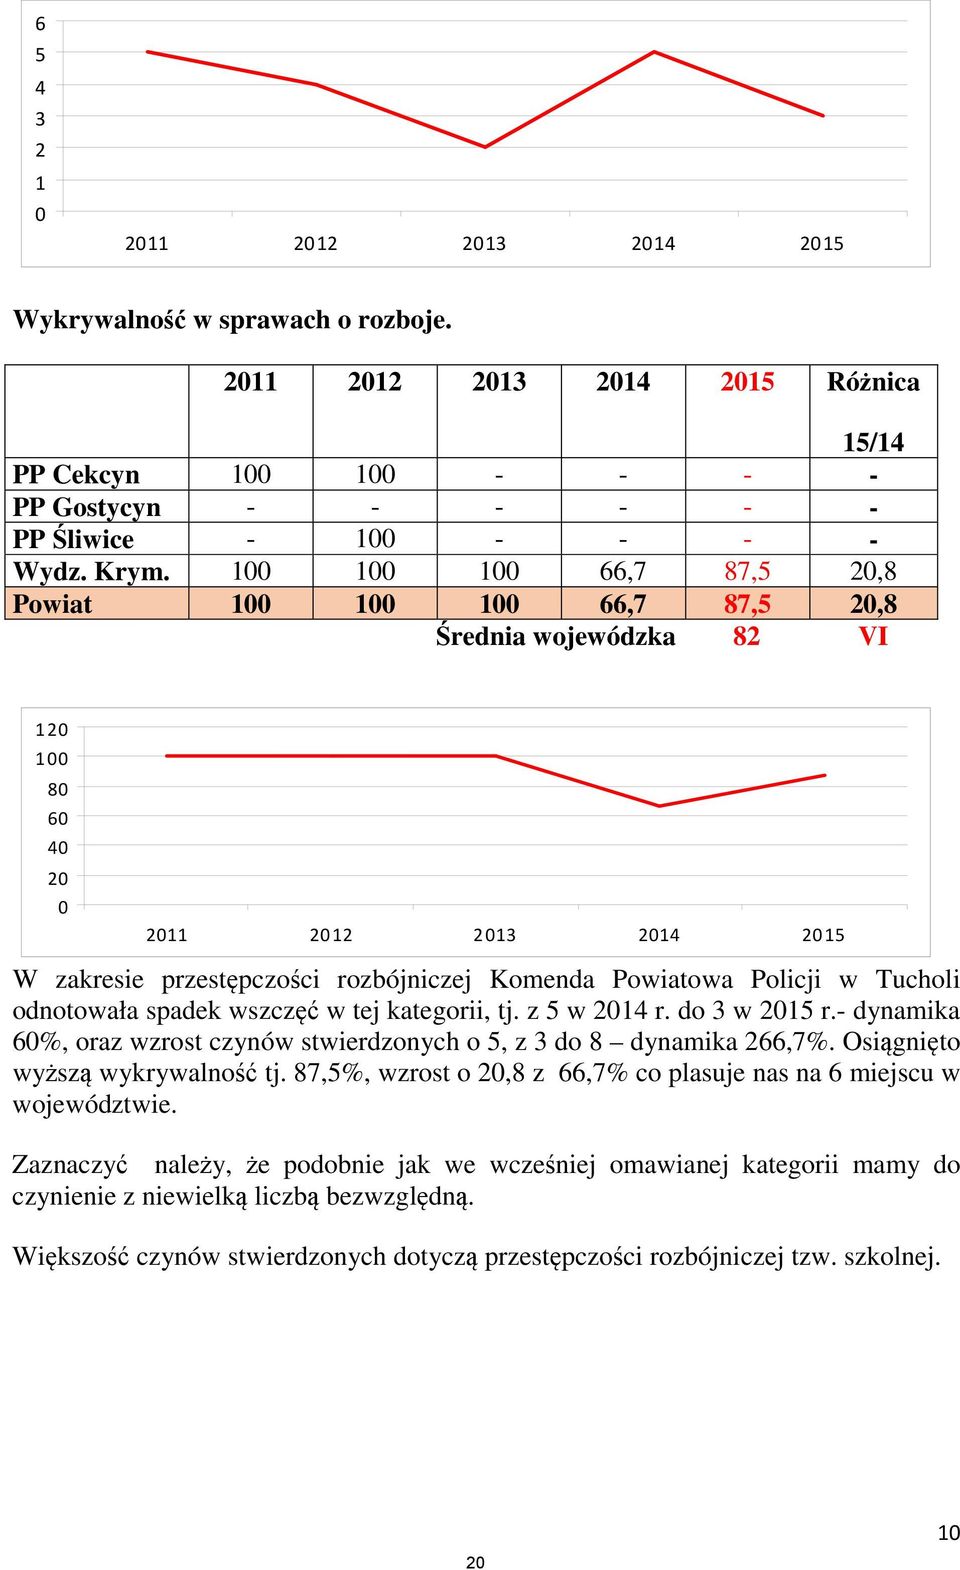 Policji w Tucholi odnotowała spadek wszczęć w tej kategorii, tj. z 5 w 2014 r. do 3 w 2015 r.- dynamika 60%, oraz wzrost czynów stwierdzonych o 5, z 3 do 8 dynamika 266,7%.